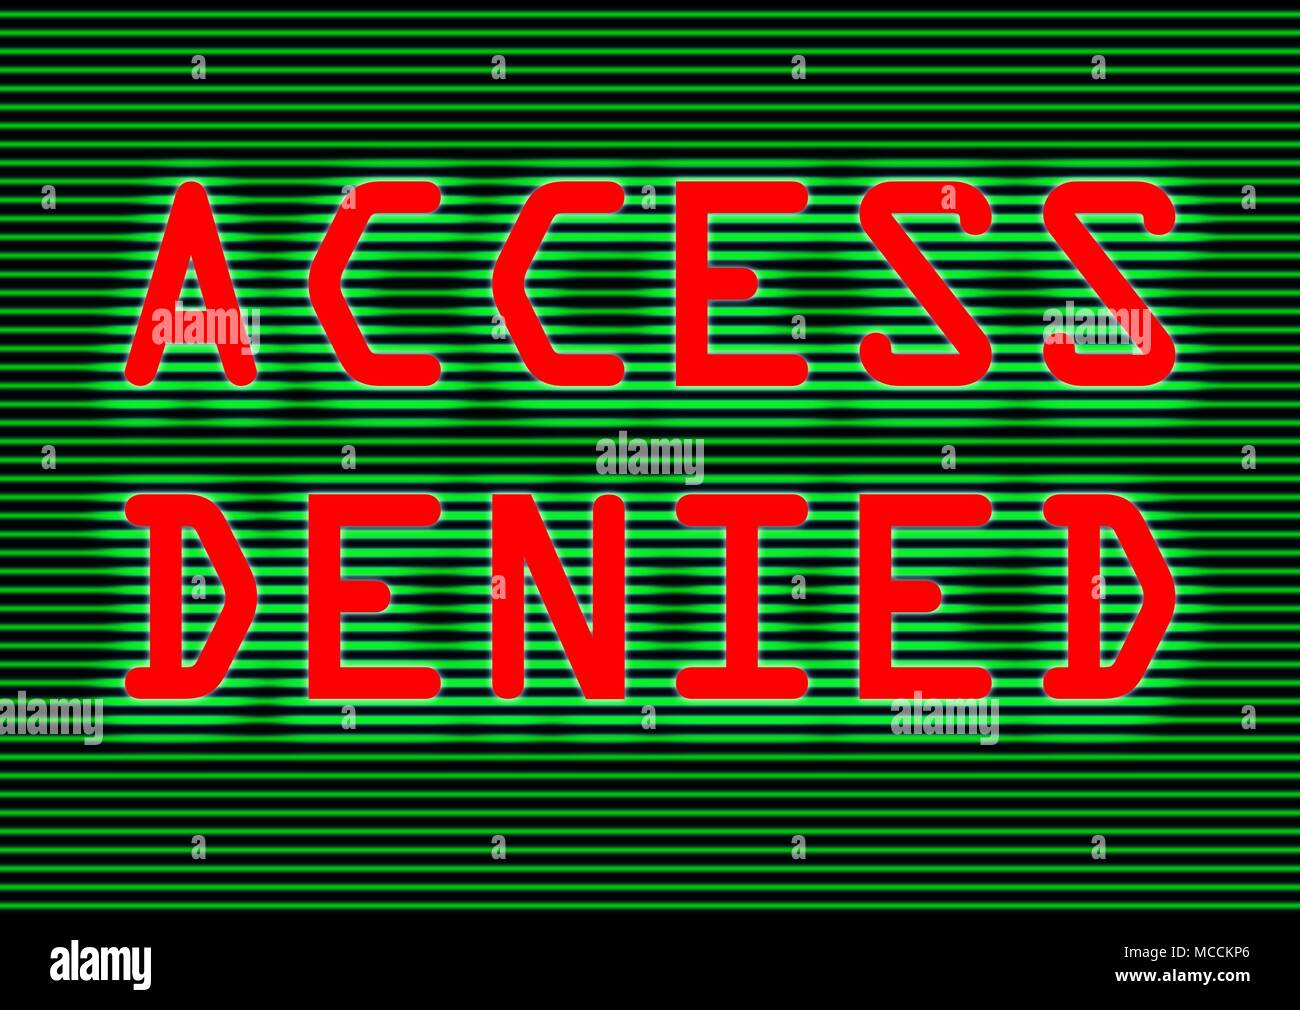 Accès refusé écrit en rouge sur l'écran de l'ordinateur internet security concept et mise en garde contre des cyber-criminels ou de panne système Banque D'Images